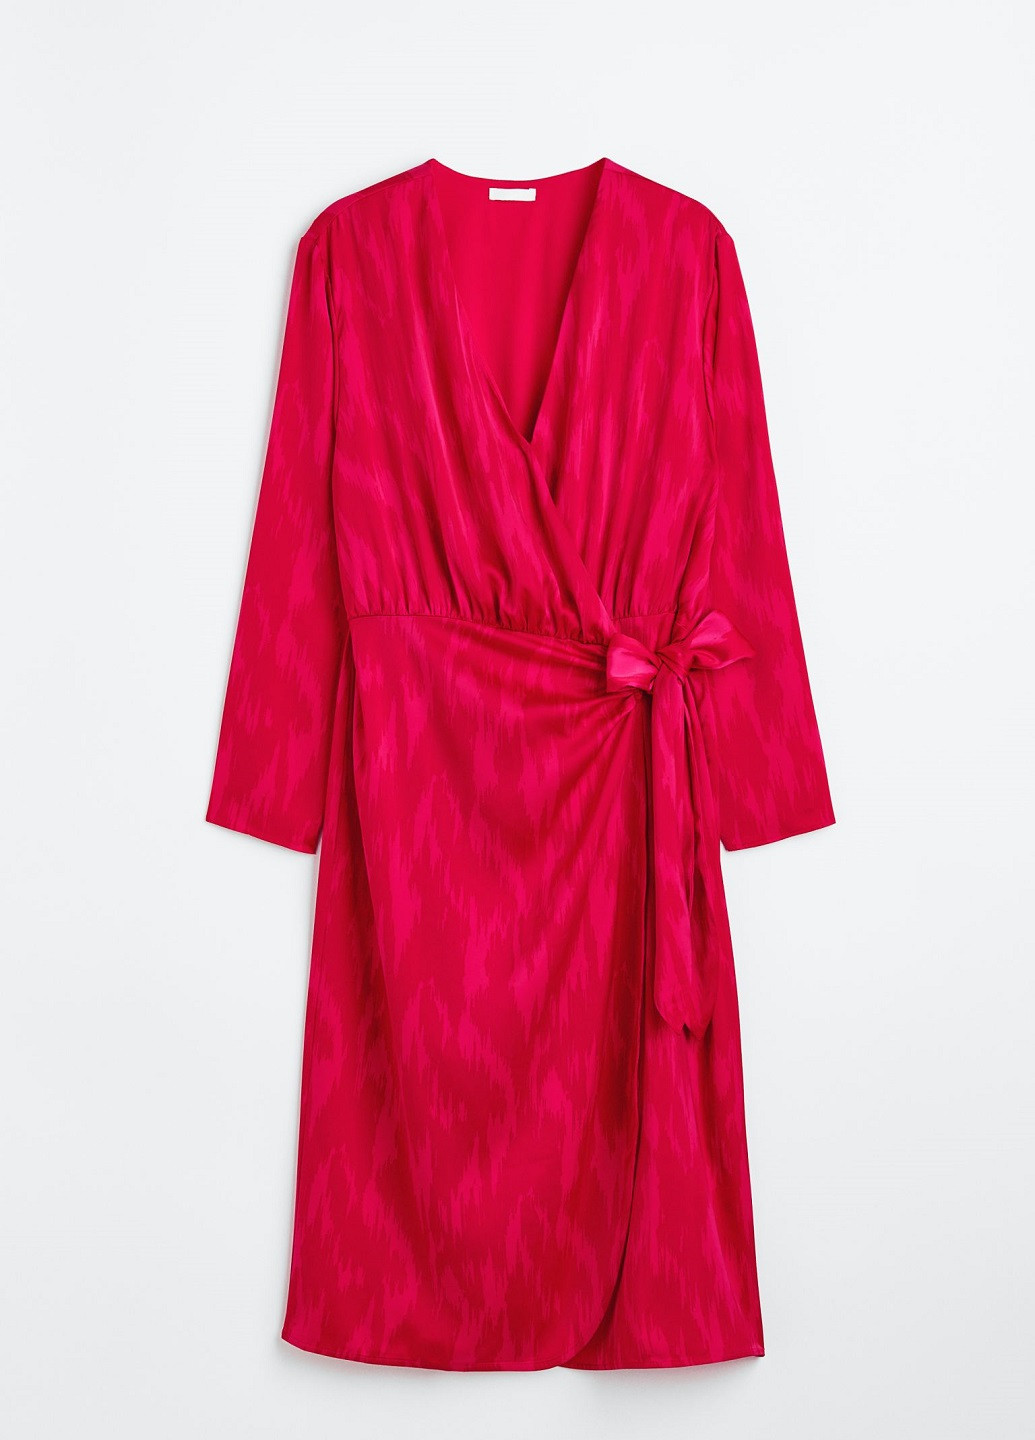 Красное коктейльное платье H&M с рисунком